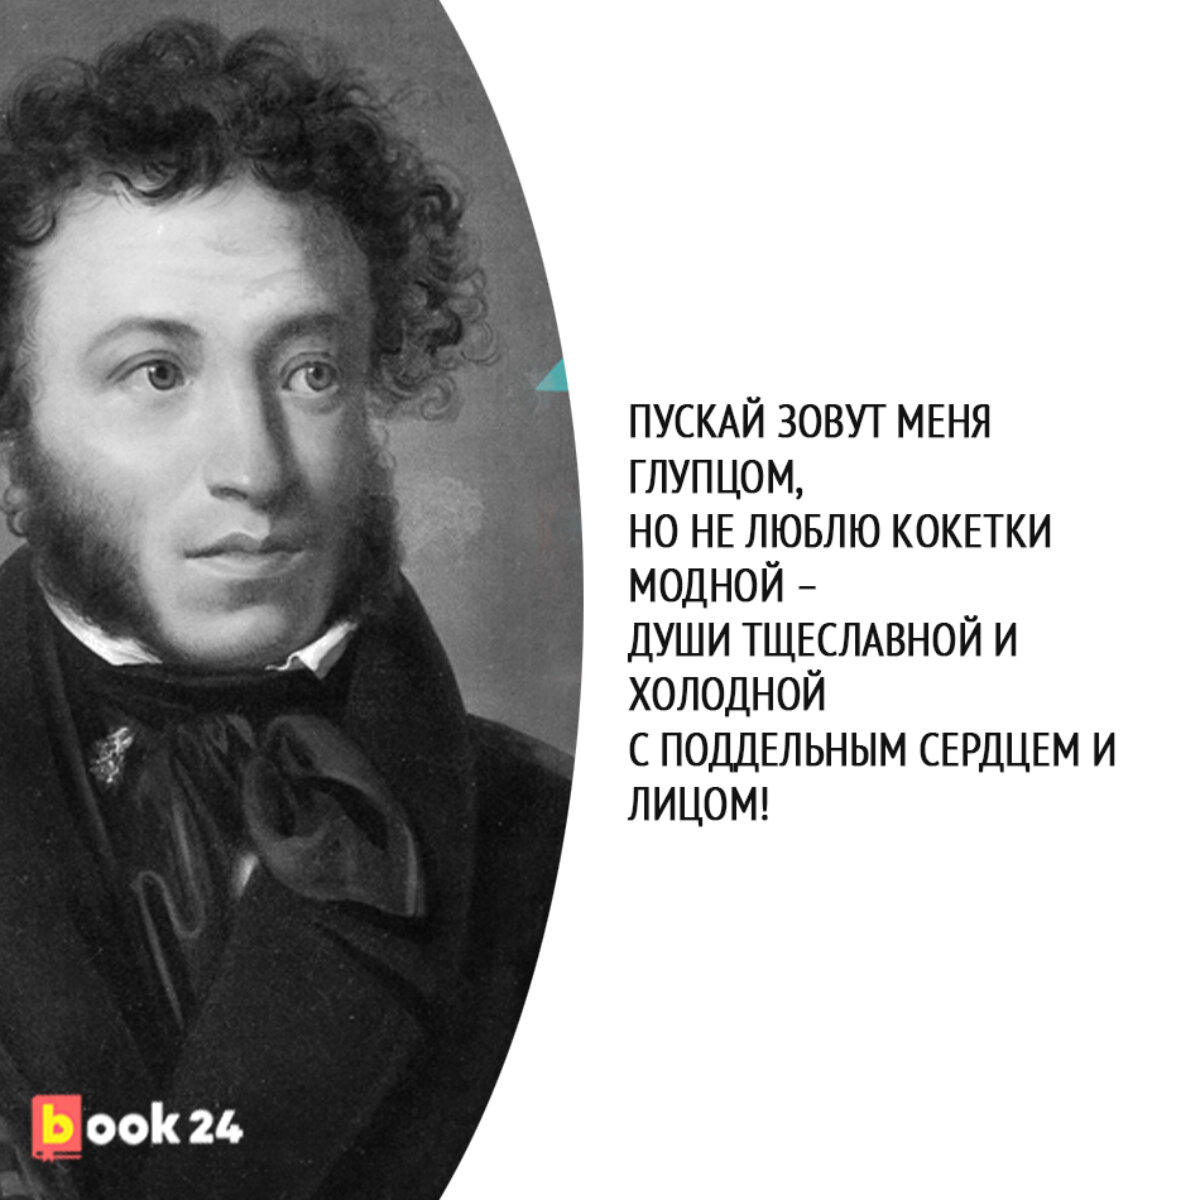 Толстого 5 пушкин. Пушкин а.с. "стихи".